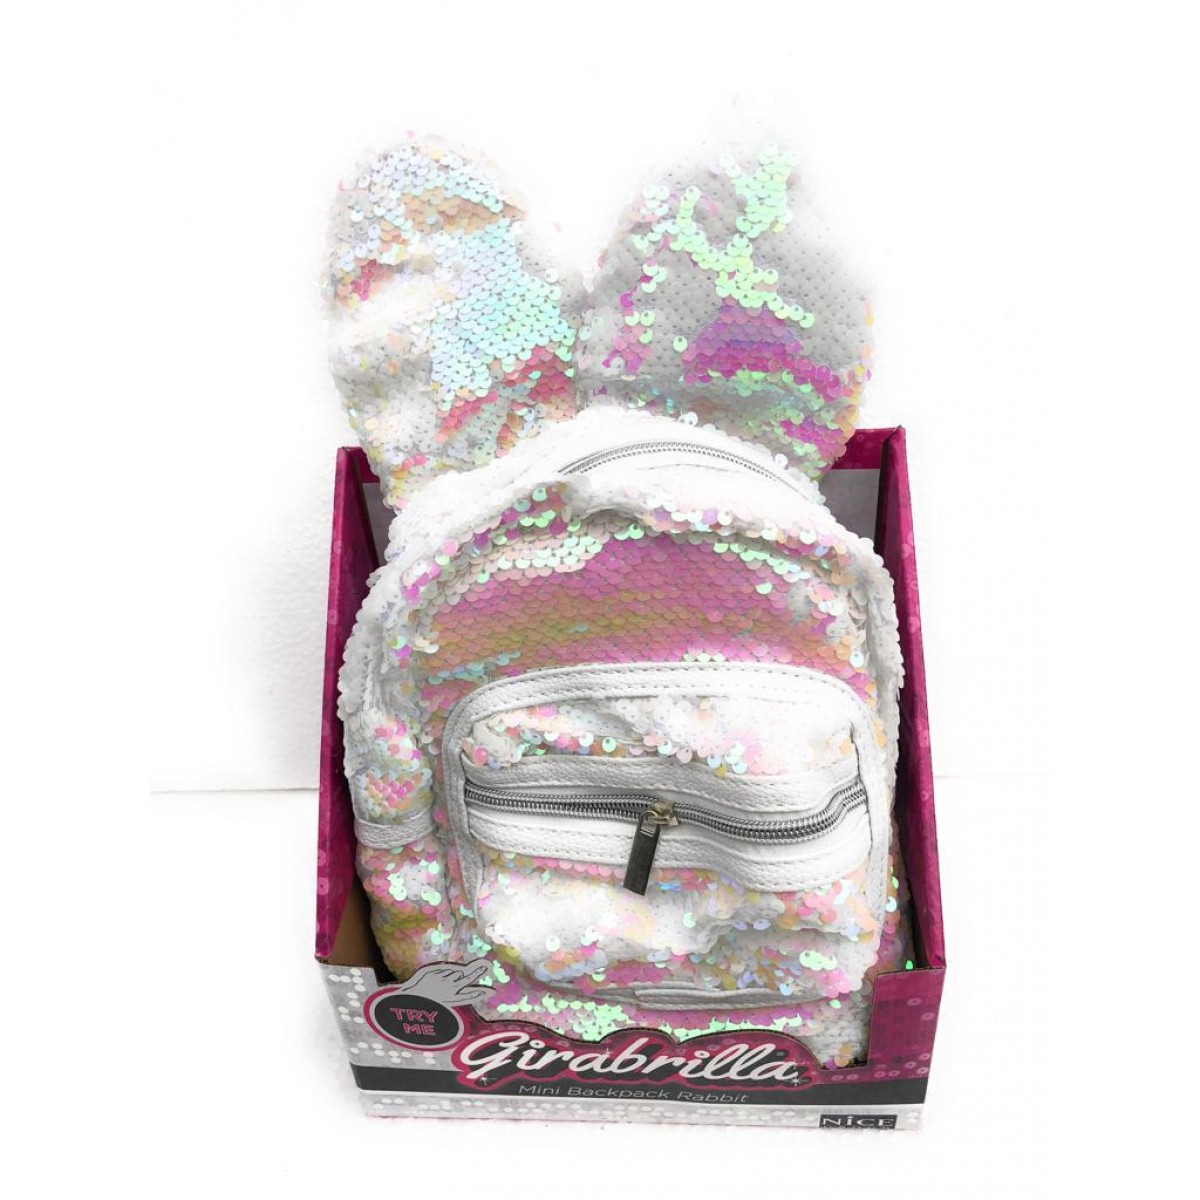 Girabrilla Mini backpack Rabbit Zaino con orecchie colore Bianco con  effetto rosa come si vede da